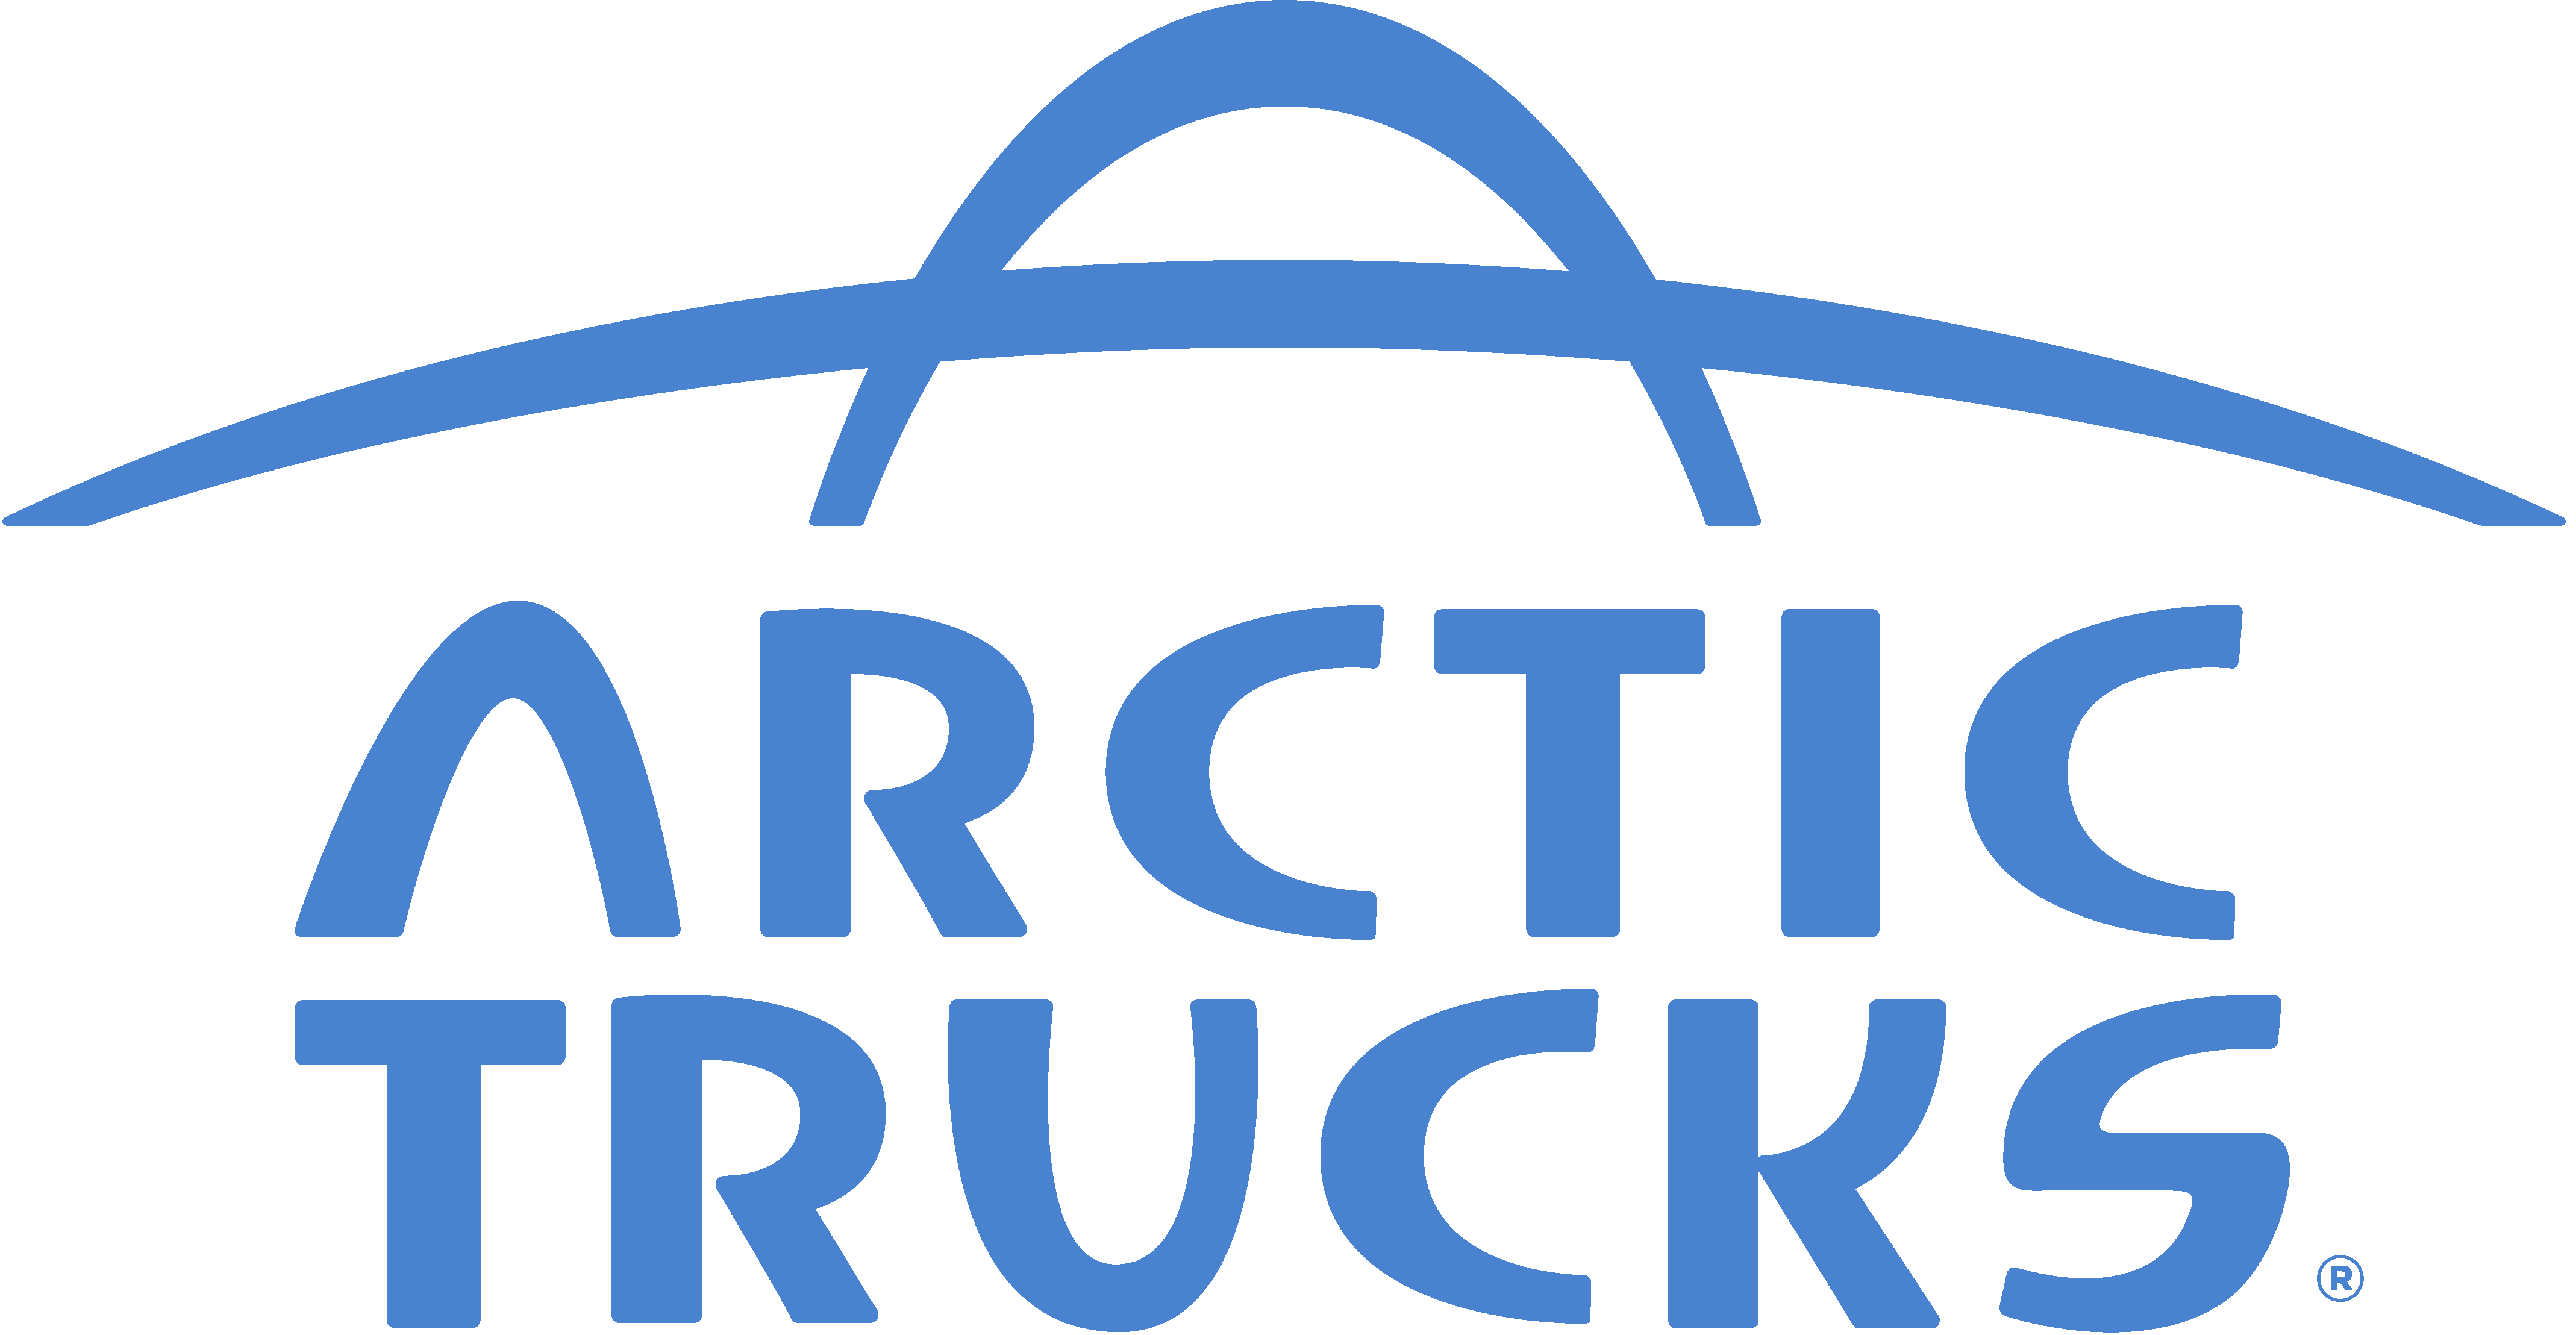 Arctic Trucks